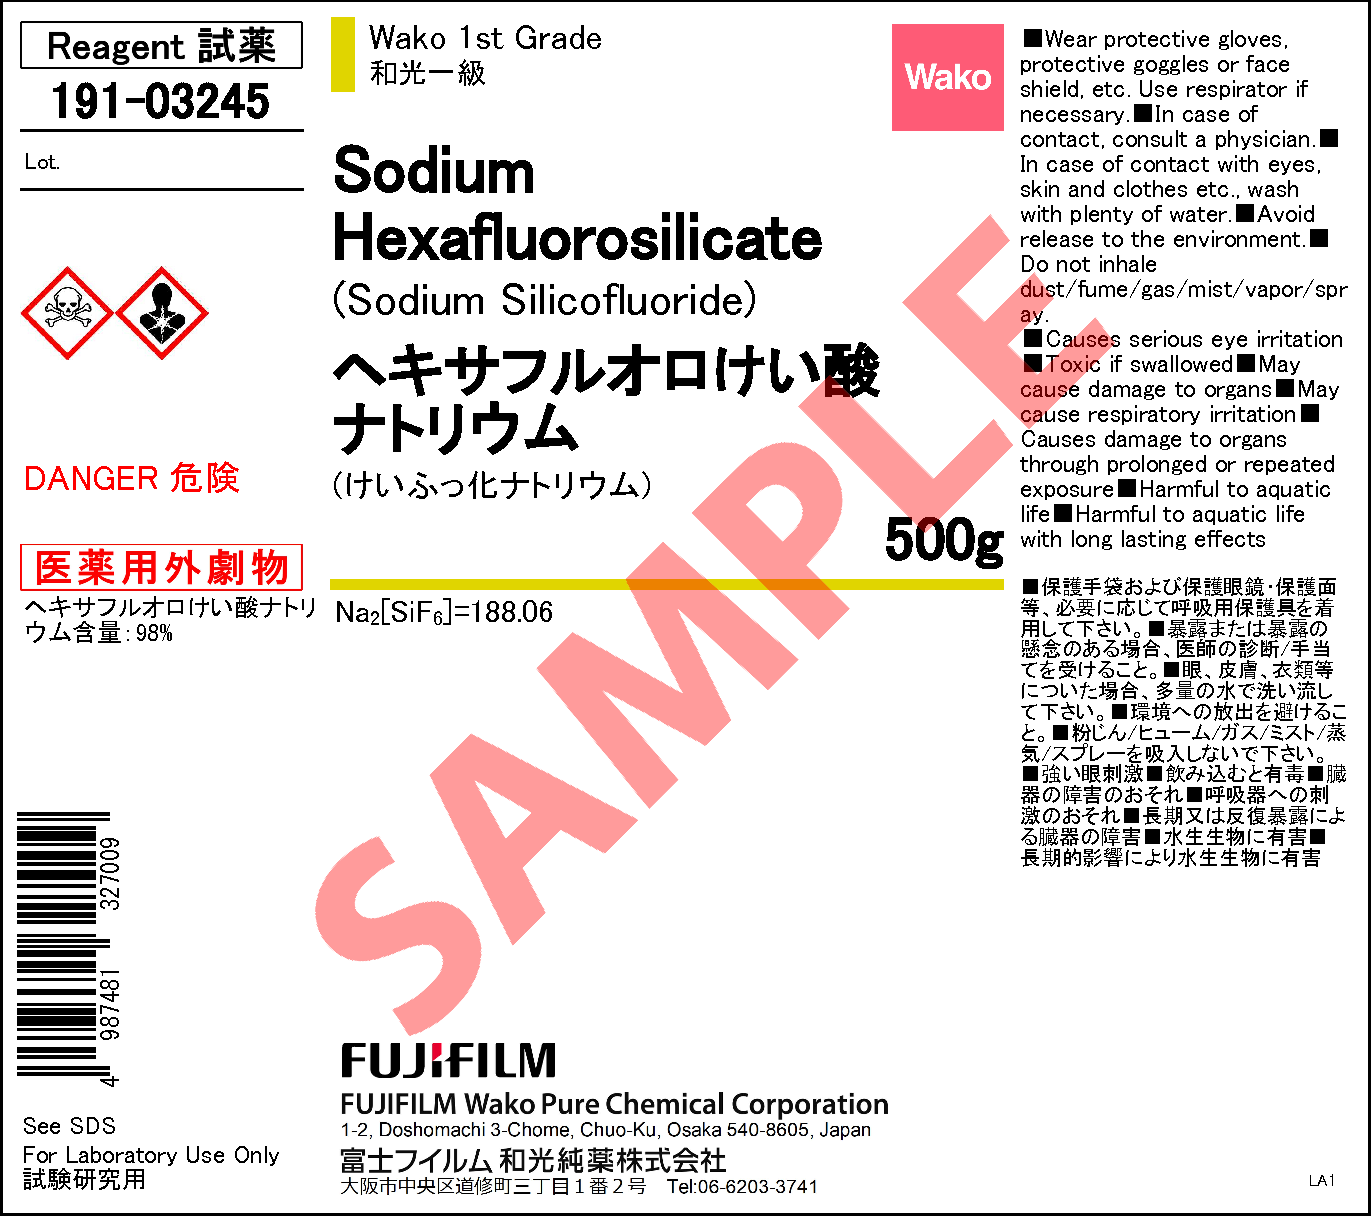 16893 85 9 ヘキサフルオロけい酸ナトリウム Sodium Hexafluorosilicate 191 03245 詳細情報 試薬 富士フイルム和光純薬